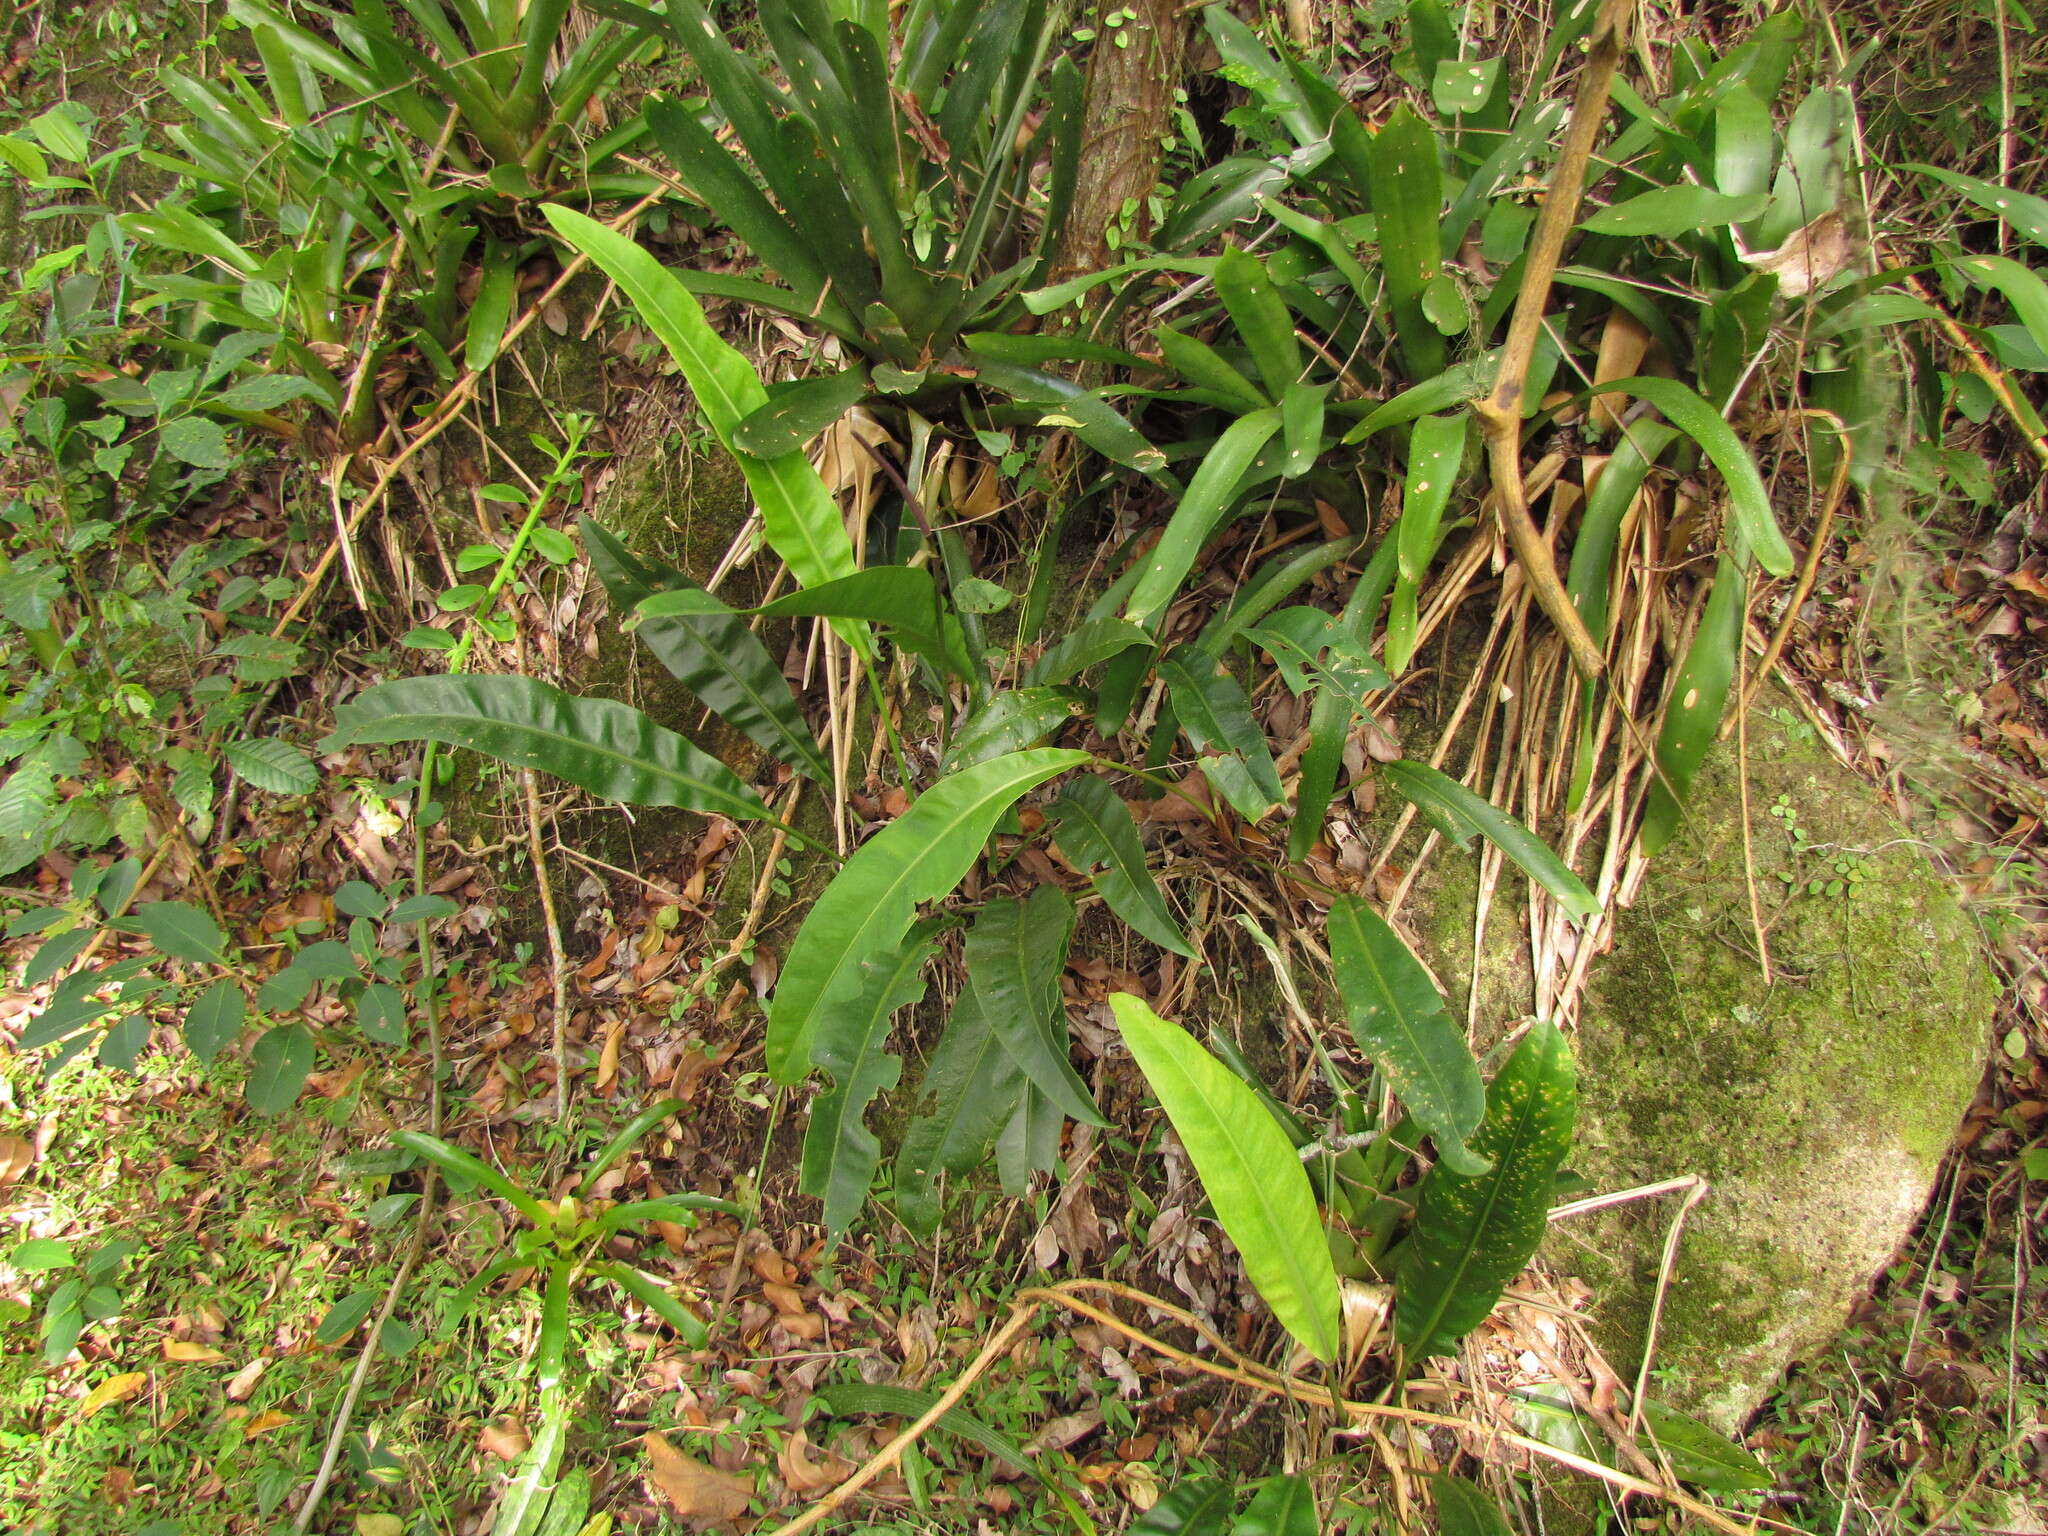 Image of Anthurium gaudichaudianum Kunth